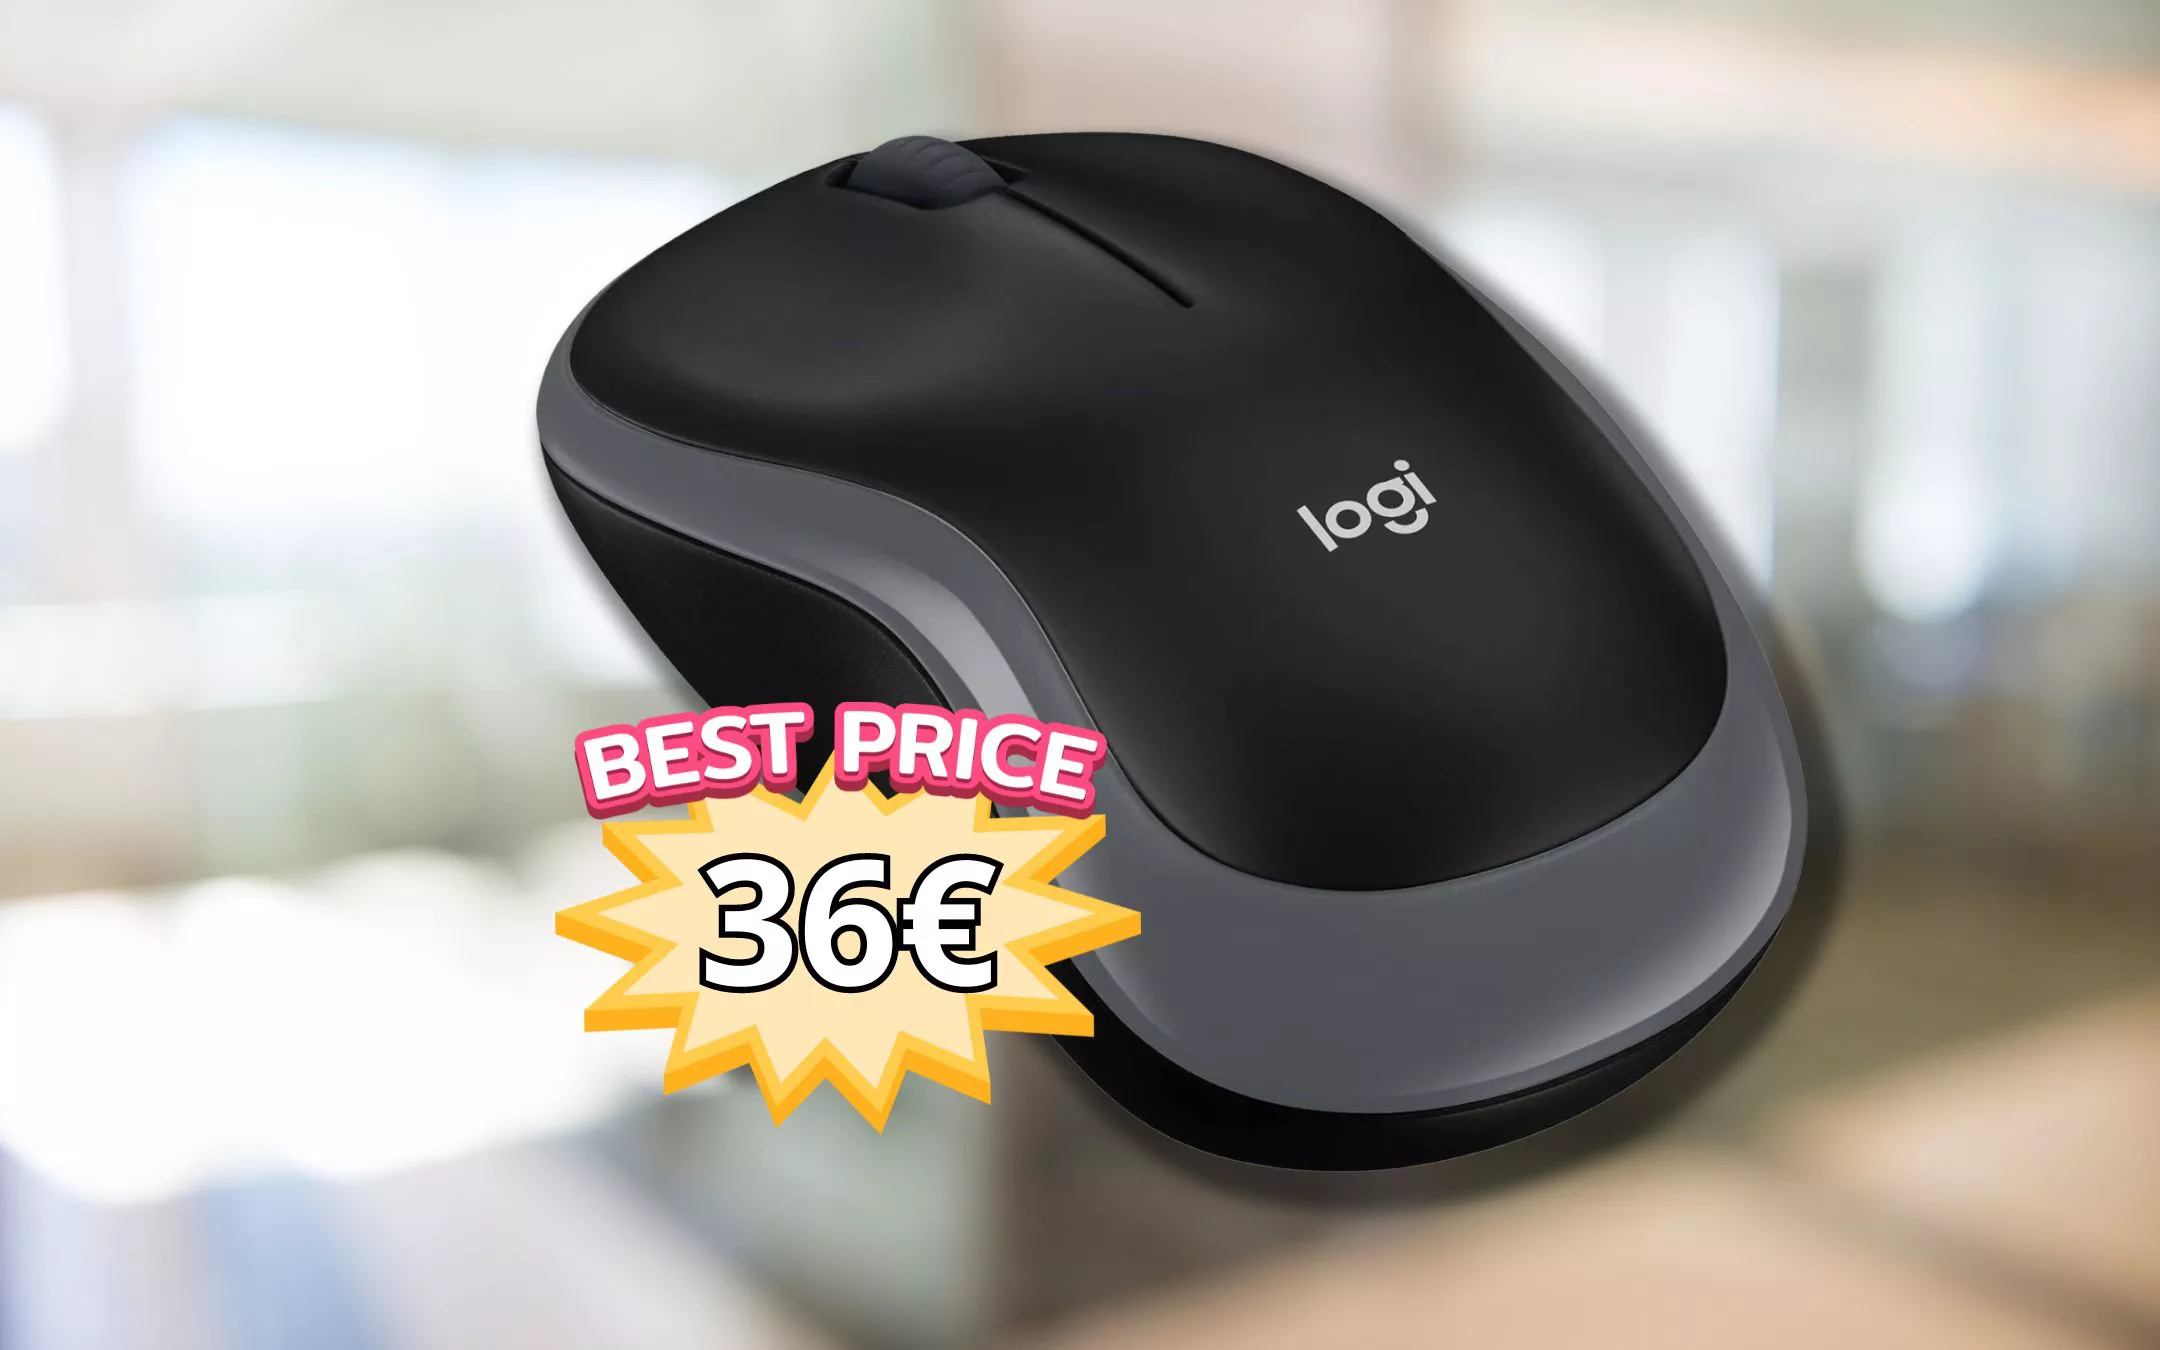 SOLO 9€ per il Mouse più desiderato del web: scoprilo in sconto! - Melablog